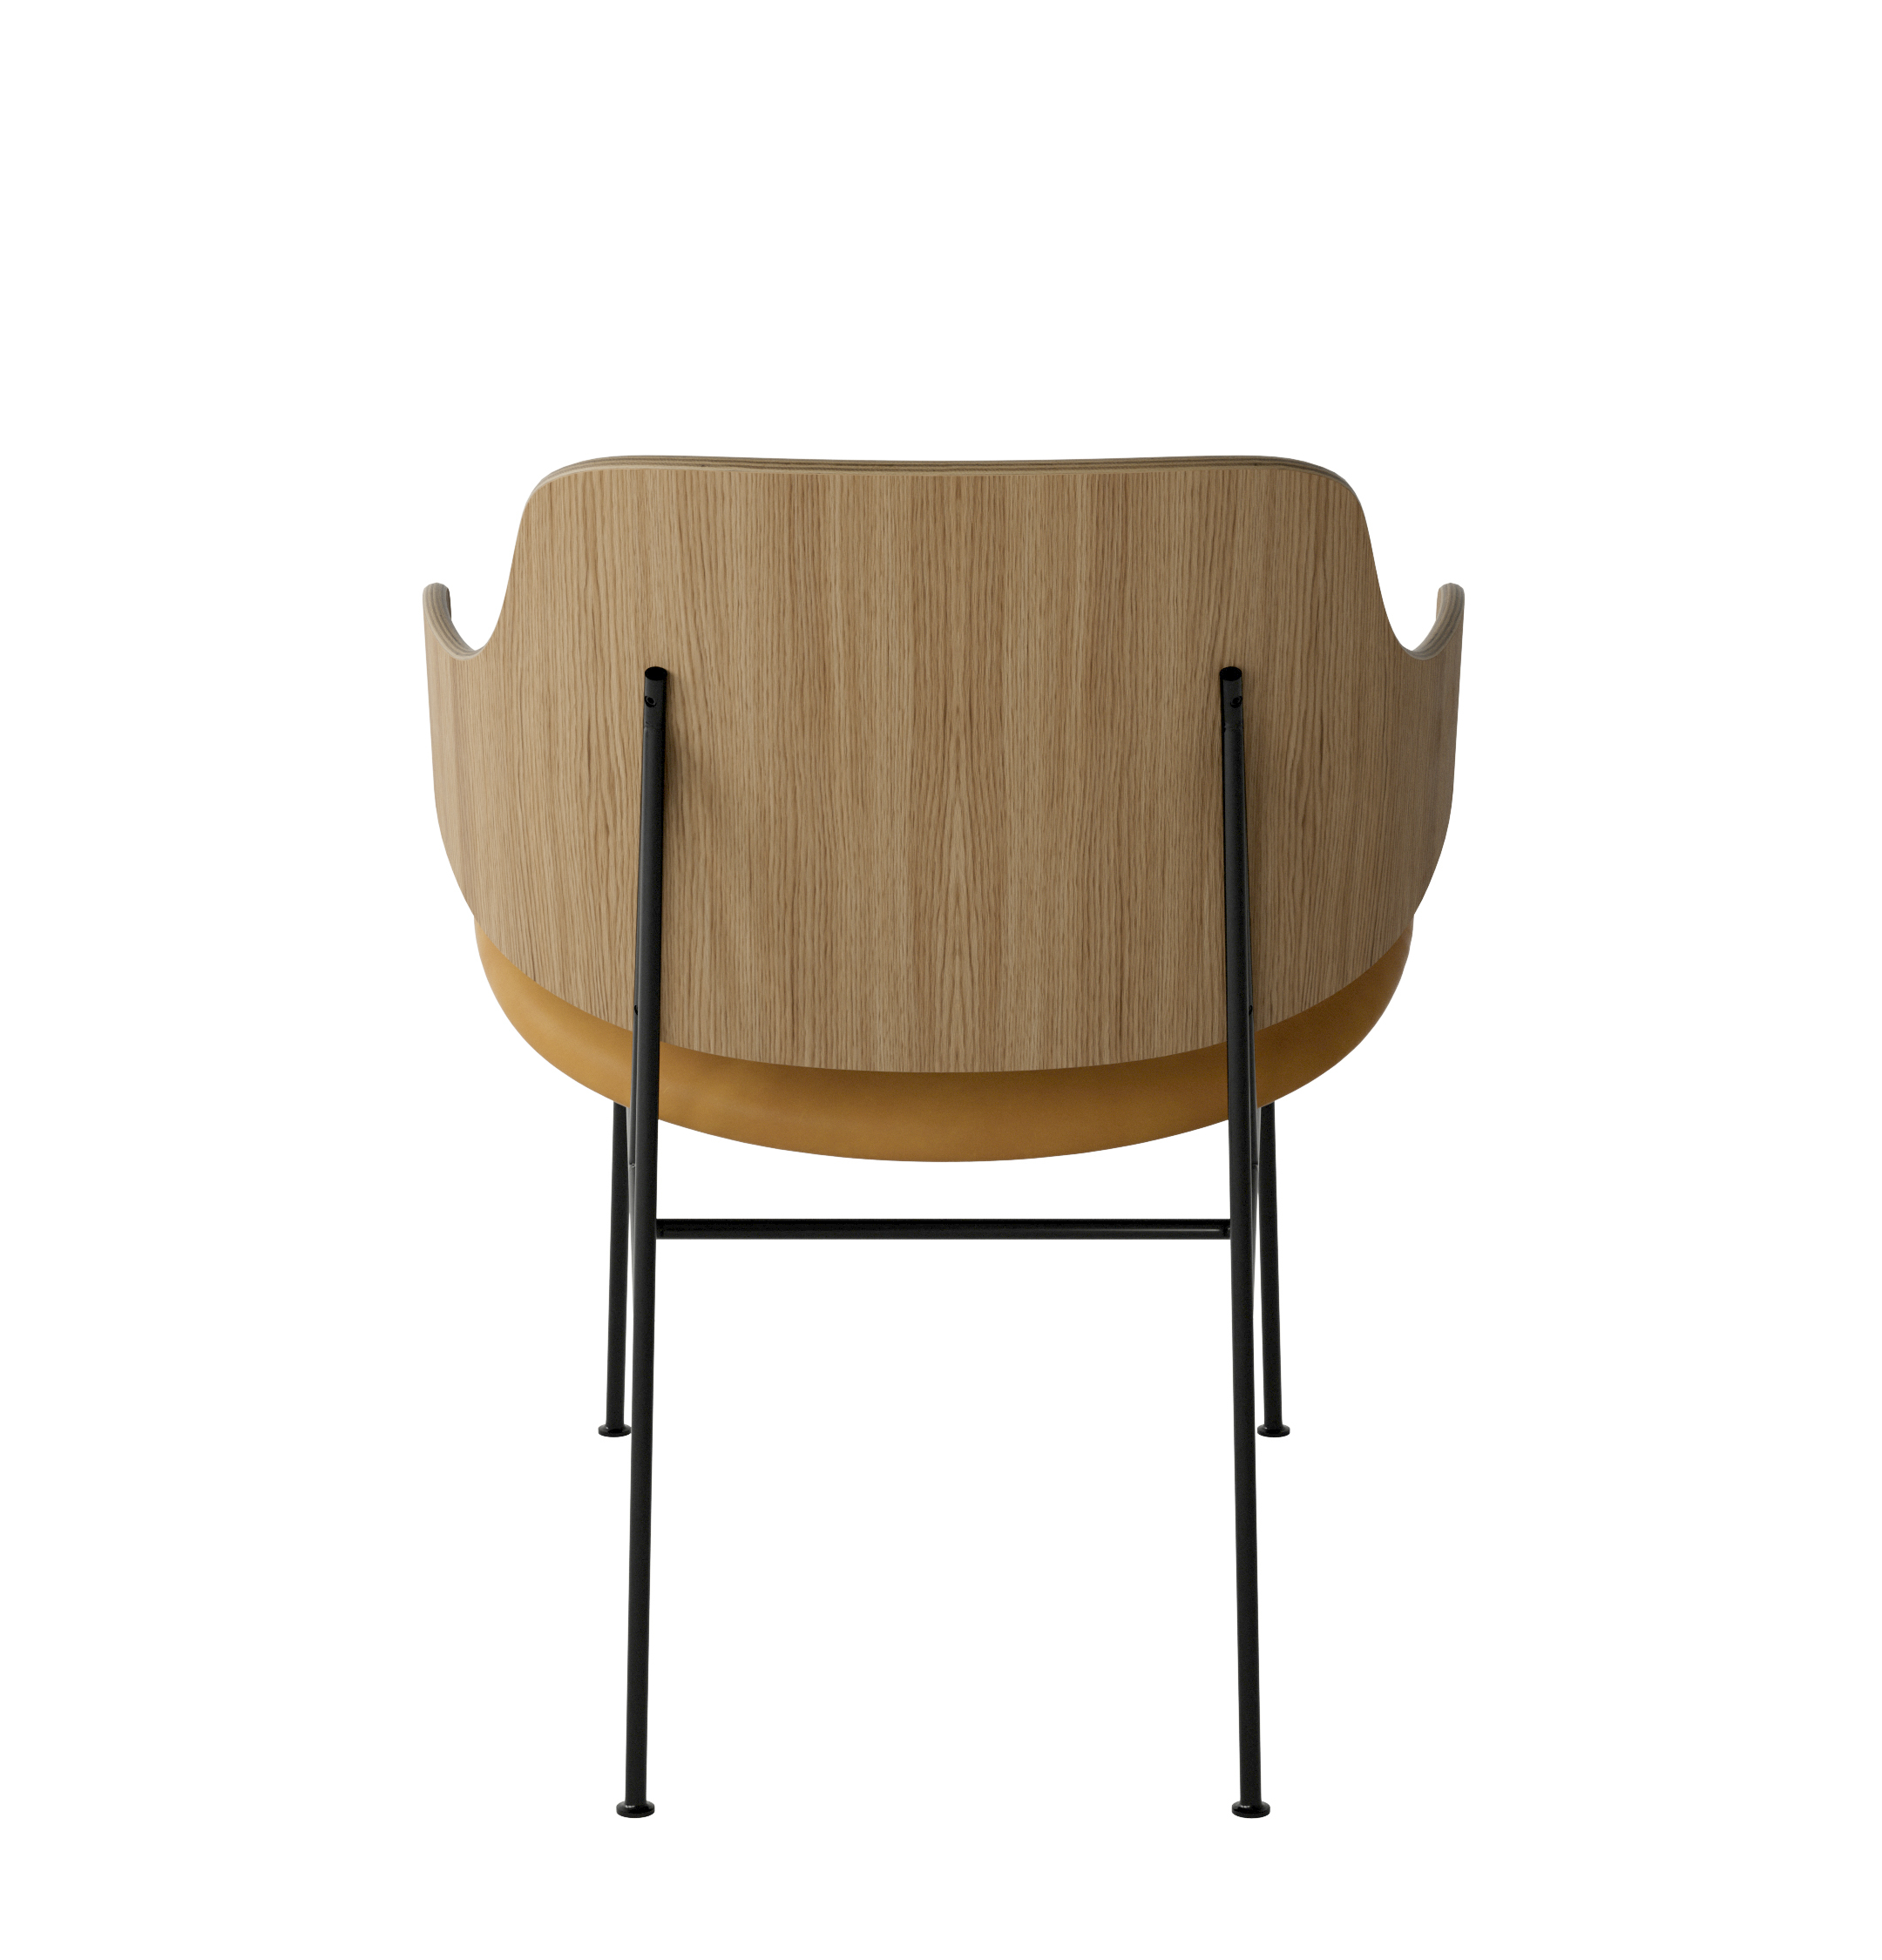 Menu - The Penguin fauteuil, zwart stalen frame, naturel eiken rugleuning, 0250 (Cognac)